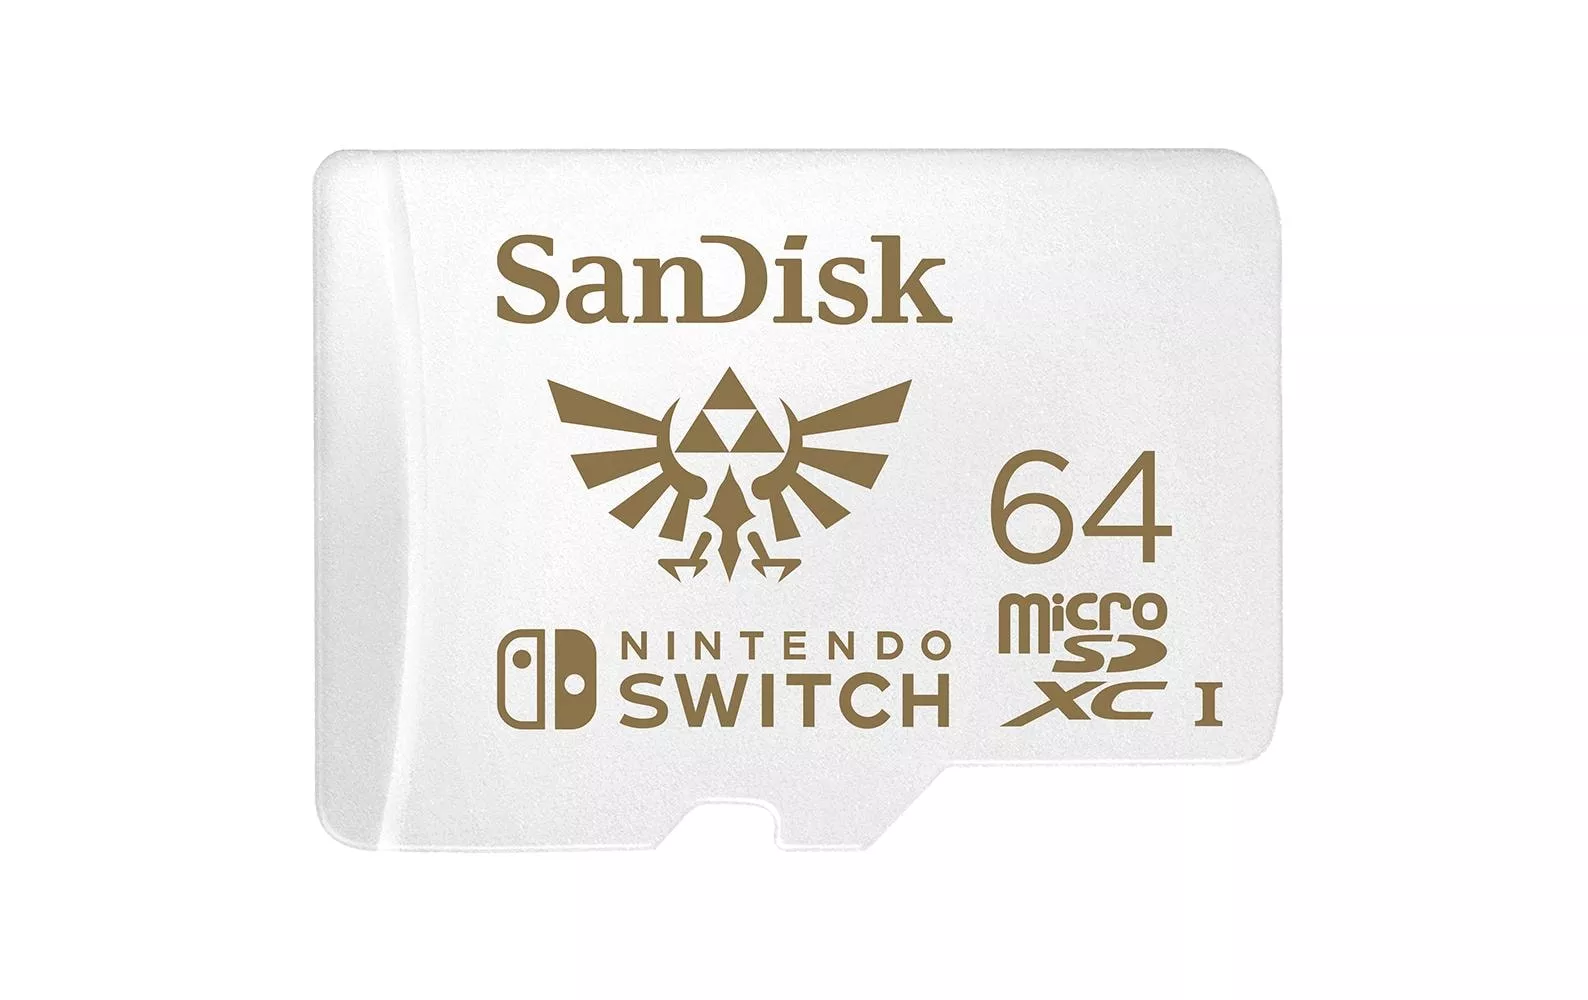 microSDXC scheda Nintendo Switch U3 64 GB